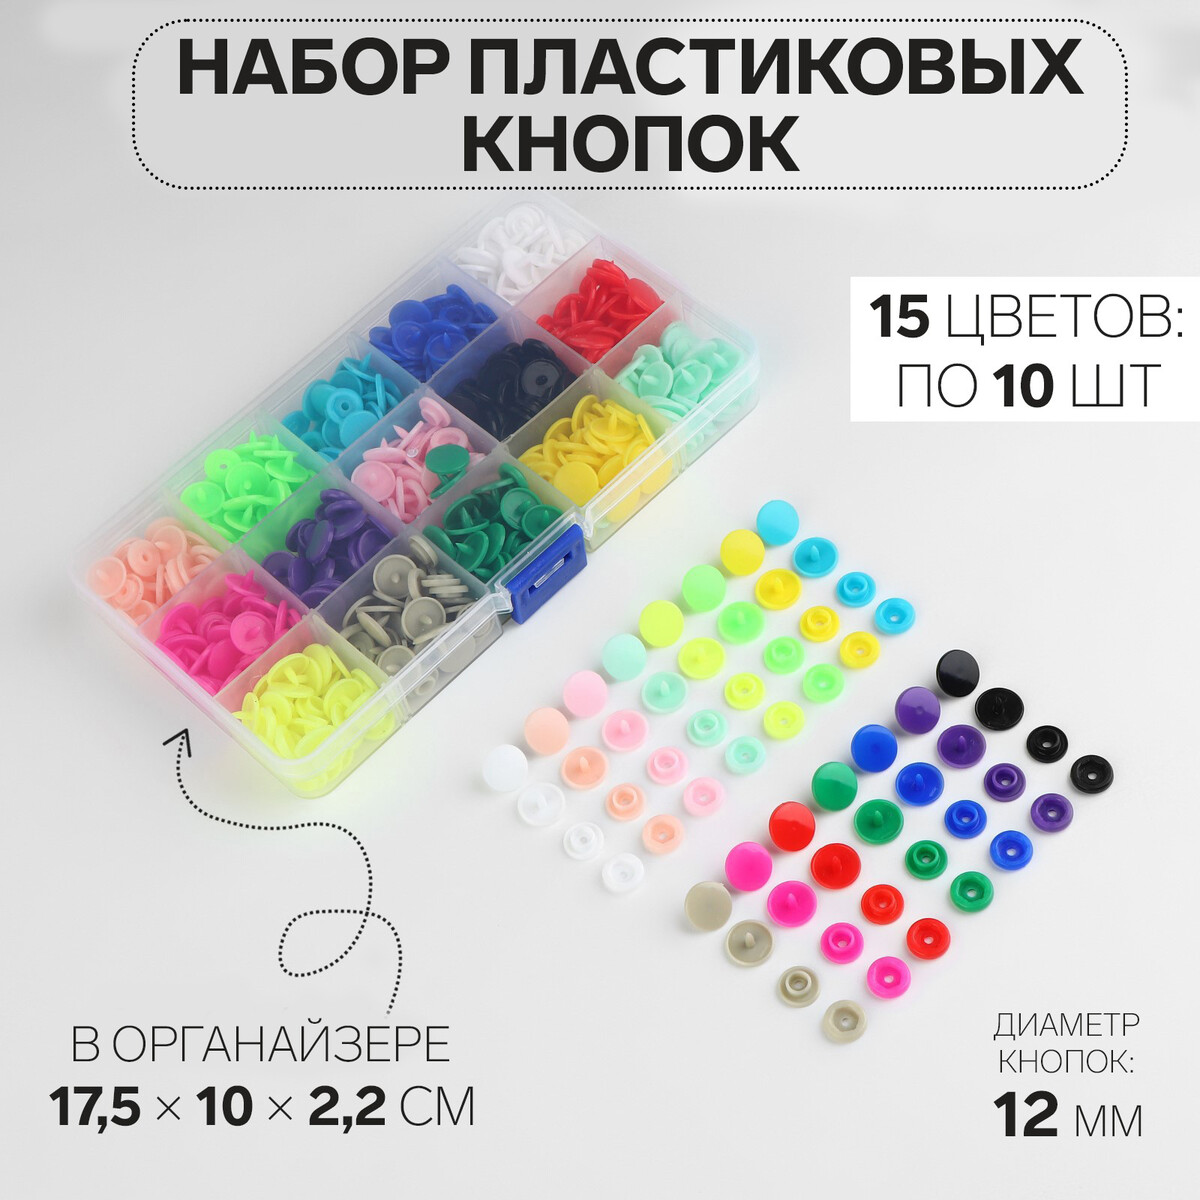 Кнопки пластиковые, d = 12 мм, 150 шт, в органайзере, цвет разноцветный кнопки силовые bе positive пастельные 200 штук